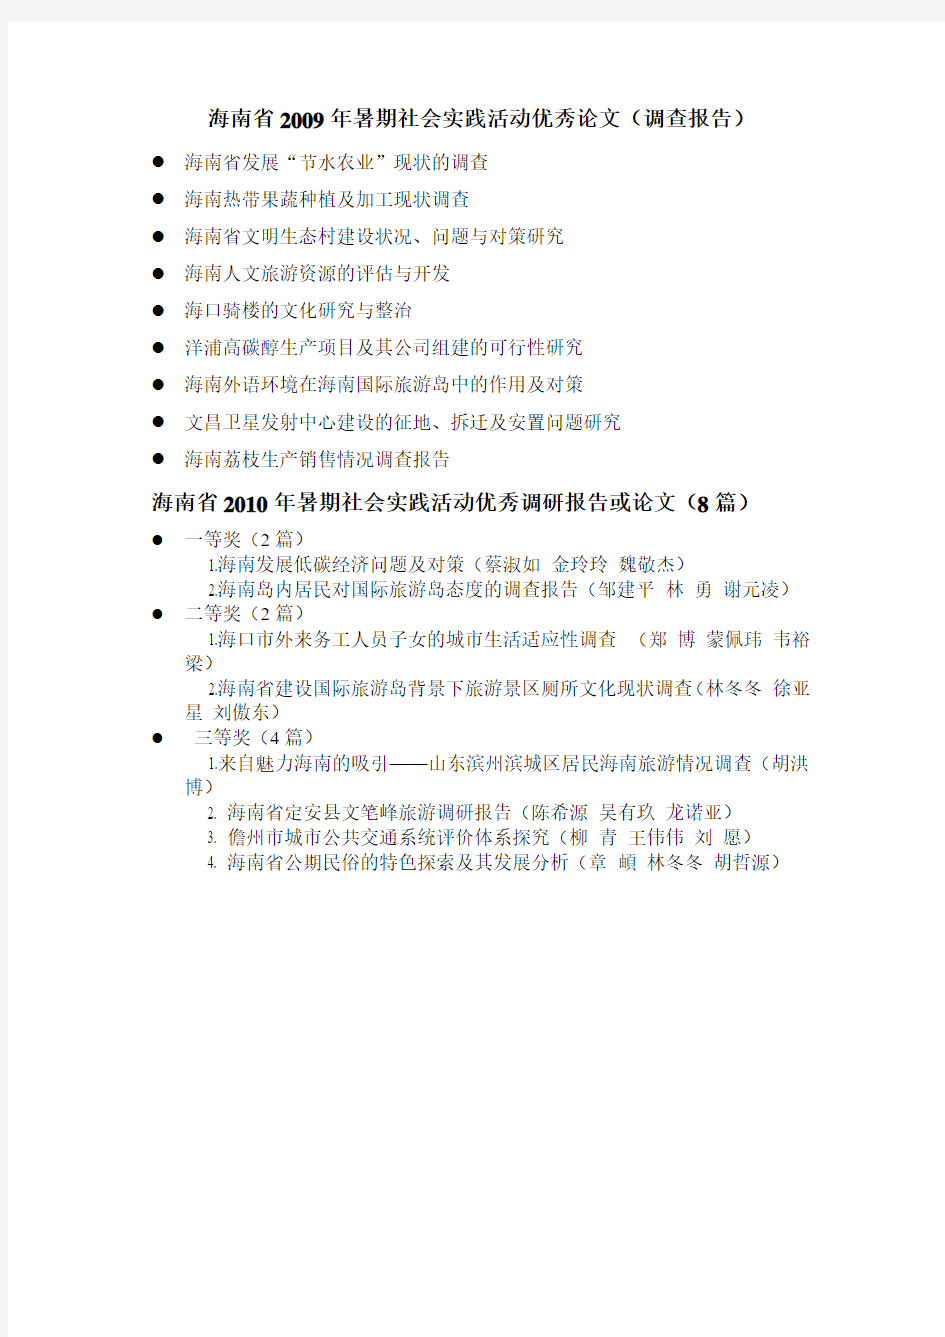 海南省暑期社会实践活动优秀论文(调查报告)